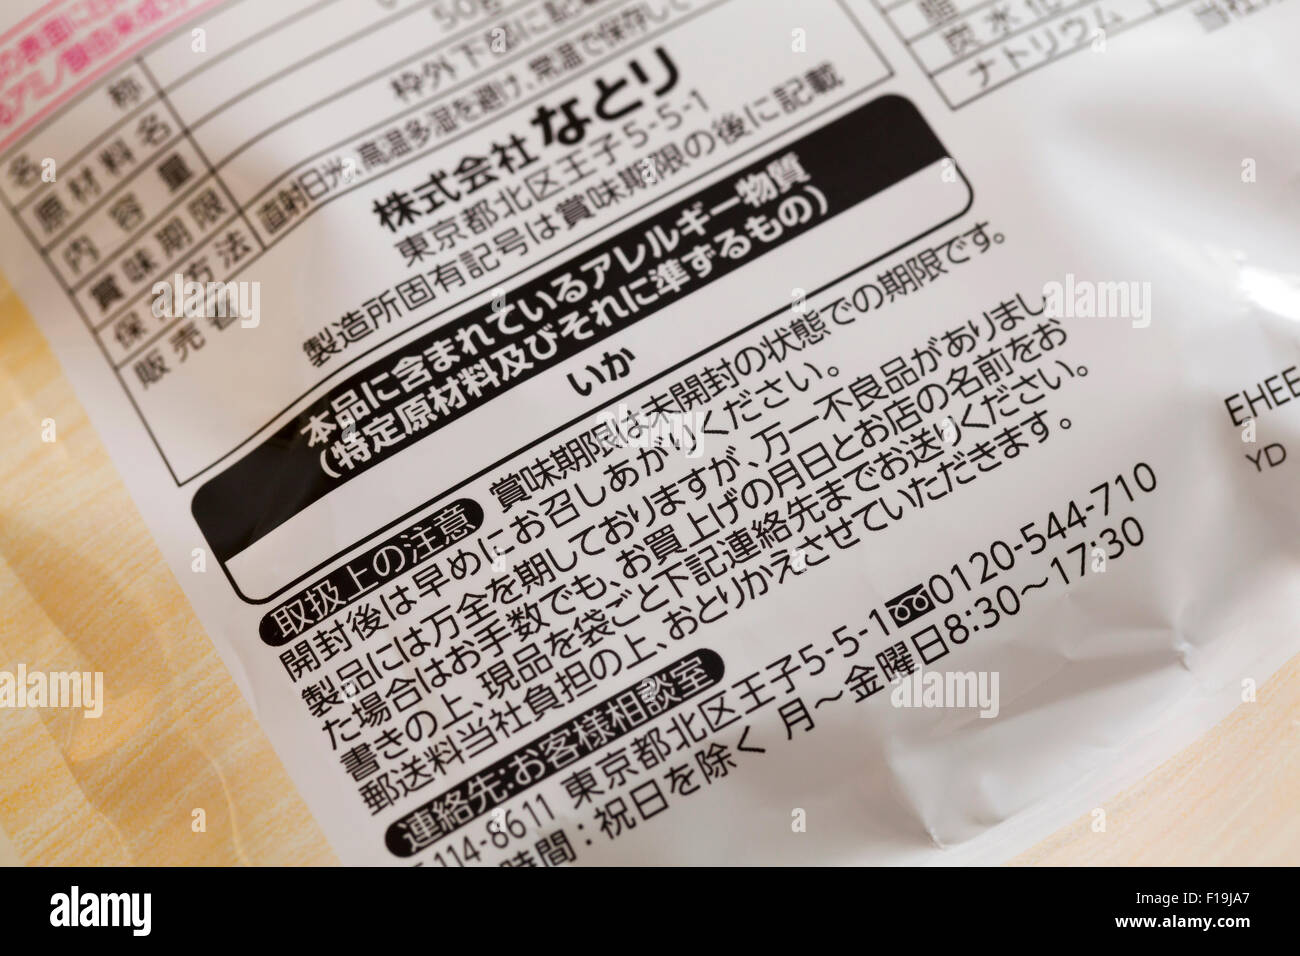 Chiitara Japanese cheese sticks snack squid allergy warning notice Stock Photo